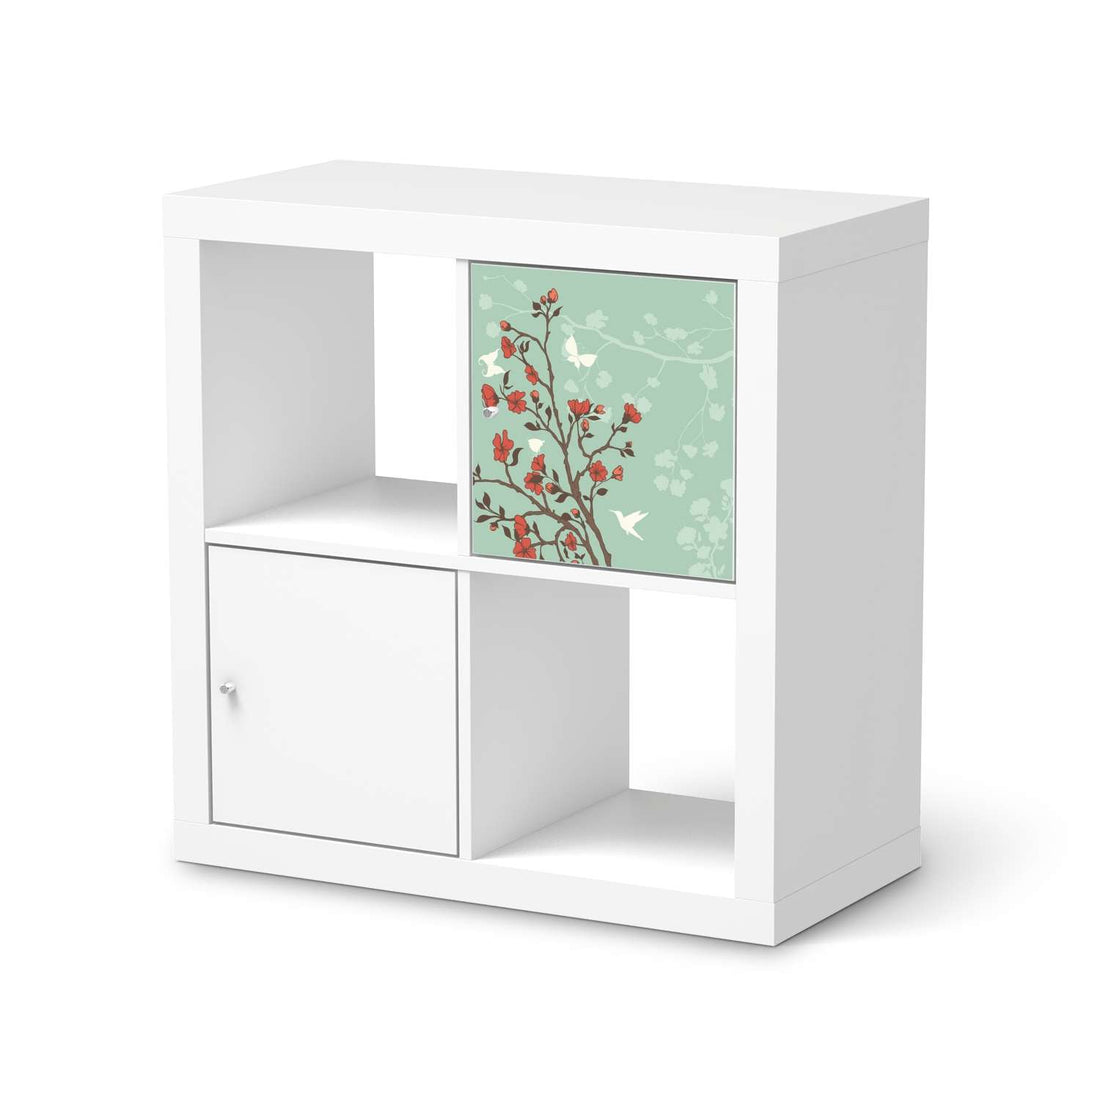 Selbstklebende Folie Blütenzauber - IKEA Kallax Regal 1 Türe  - weiss